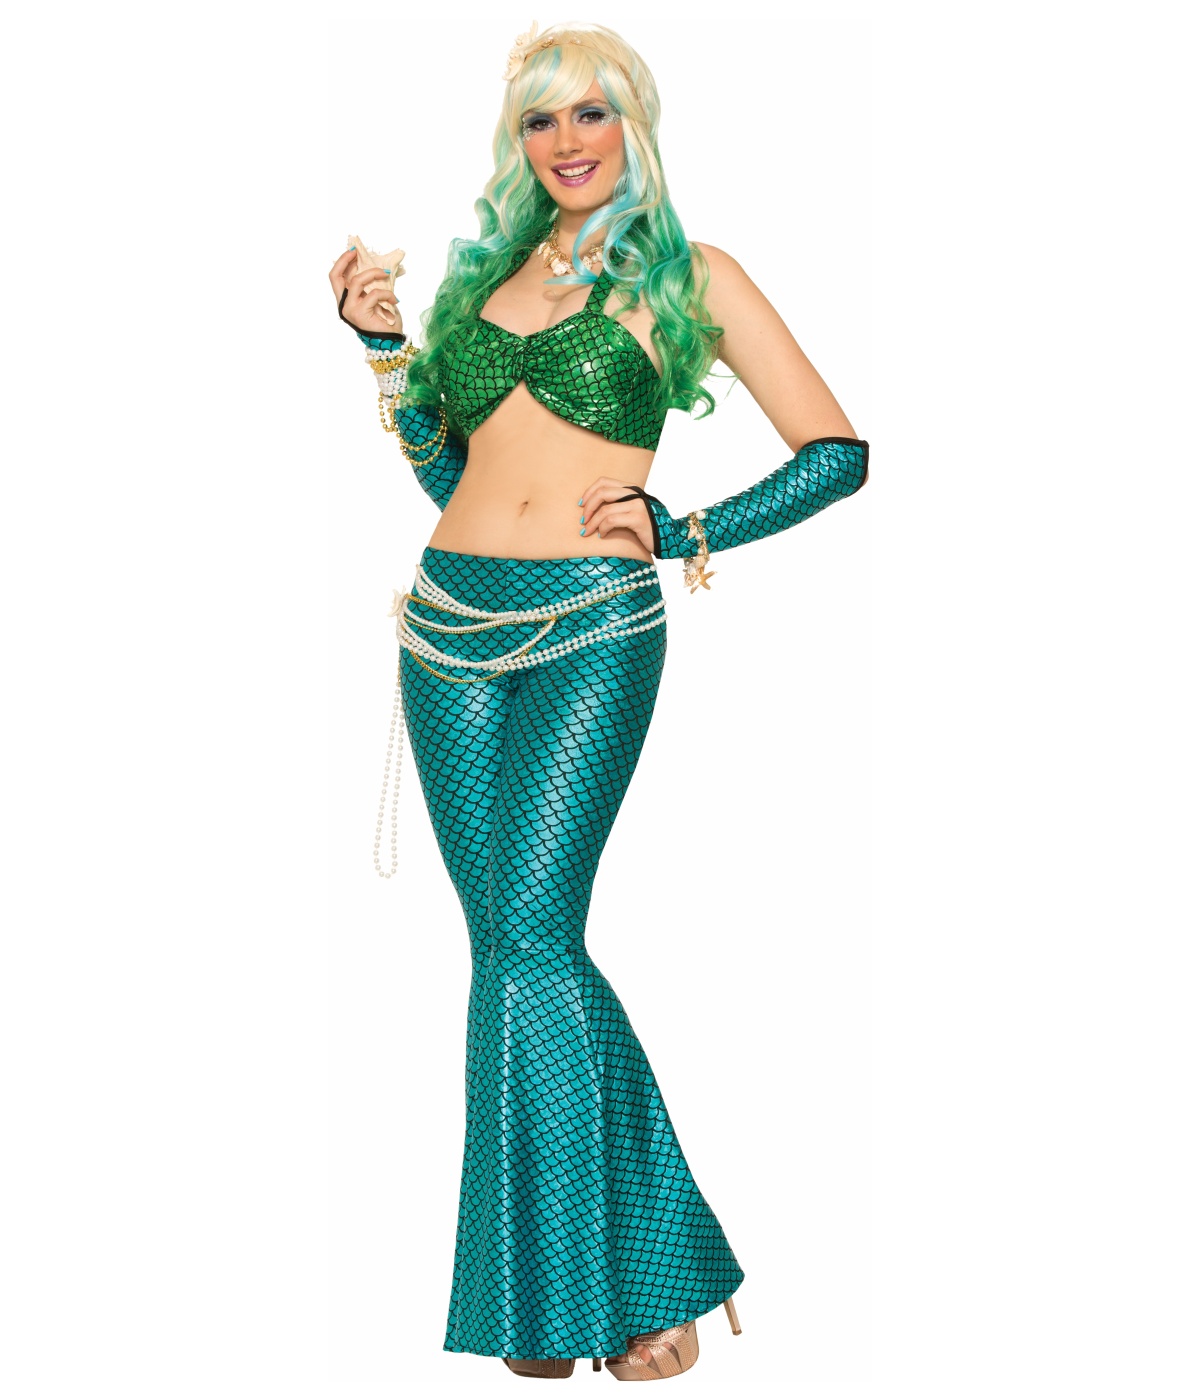  Green Mermaid Bikini Top